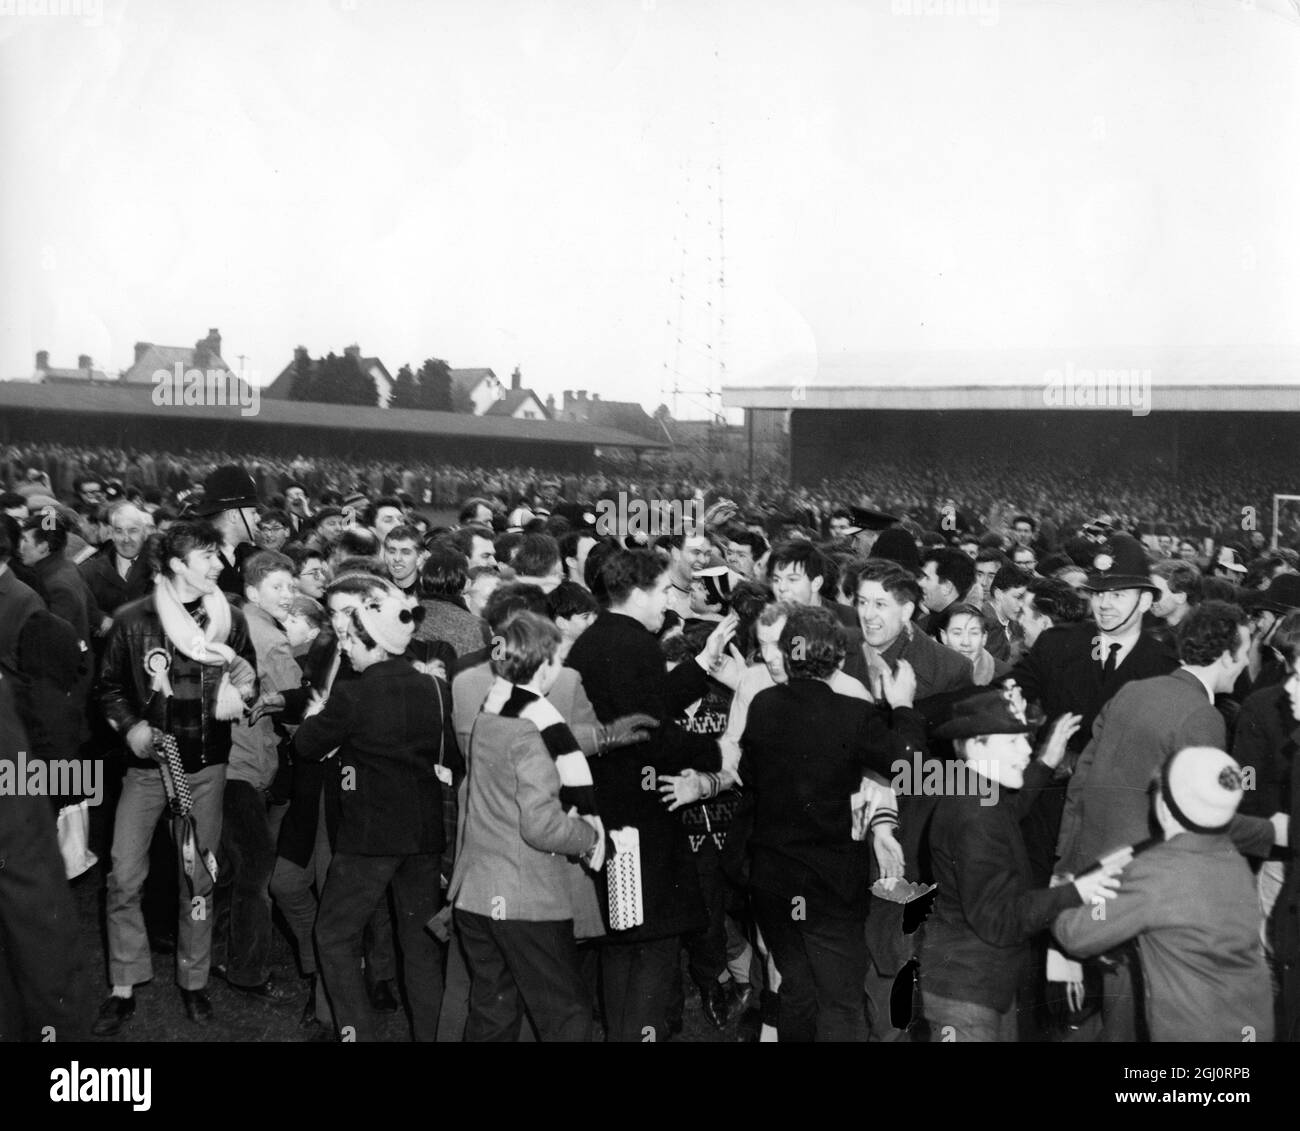 FUSSBALL: Oxford United verursachte den Schock der FA Cup fünften Runde Krawatten, als sie die erste Division Blackburn Rovers um 3 Tore zu 1 in Oxford schlagen. Hier sieht man jubelende Fans, die nach dem Spiel auf dem Spielfeld raiden. 15. Februar 1964 Stockfoto